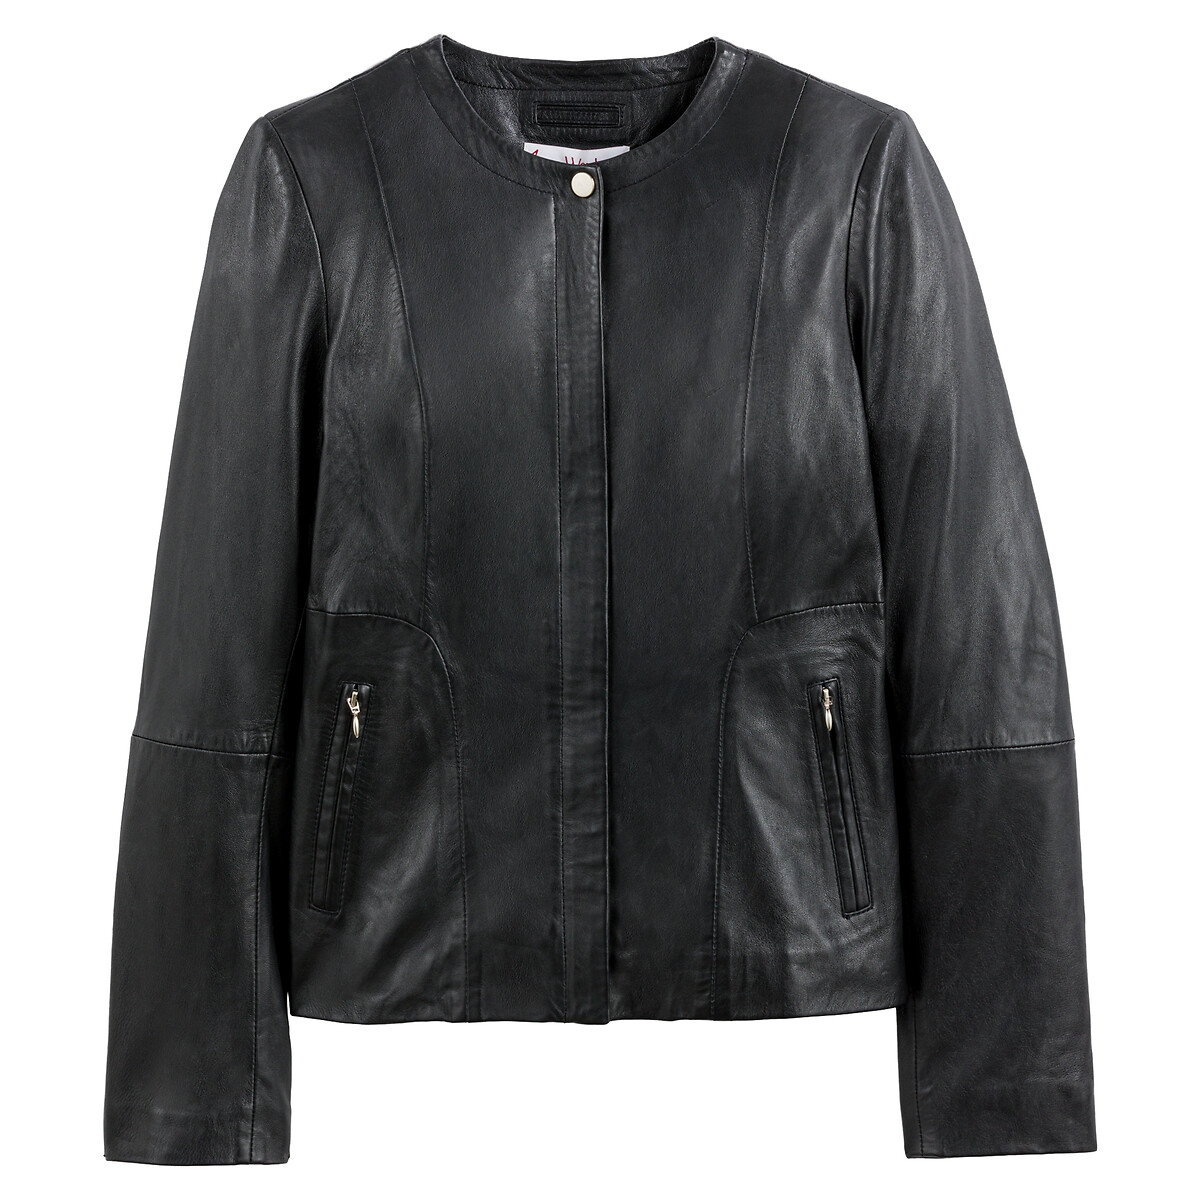 Куртка LaRedoute Короткая из кожи ягненка 48 (FR) - 54 (RUS) черный, размер 48 (FR) - 54 (RUS) Короткая из кожи ягненка 48 (FR) - 54 (RUS) черный - фото 5